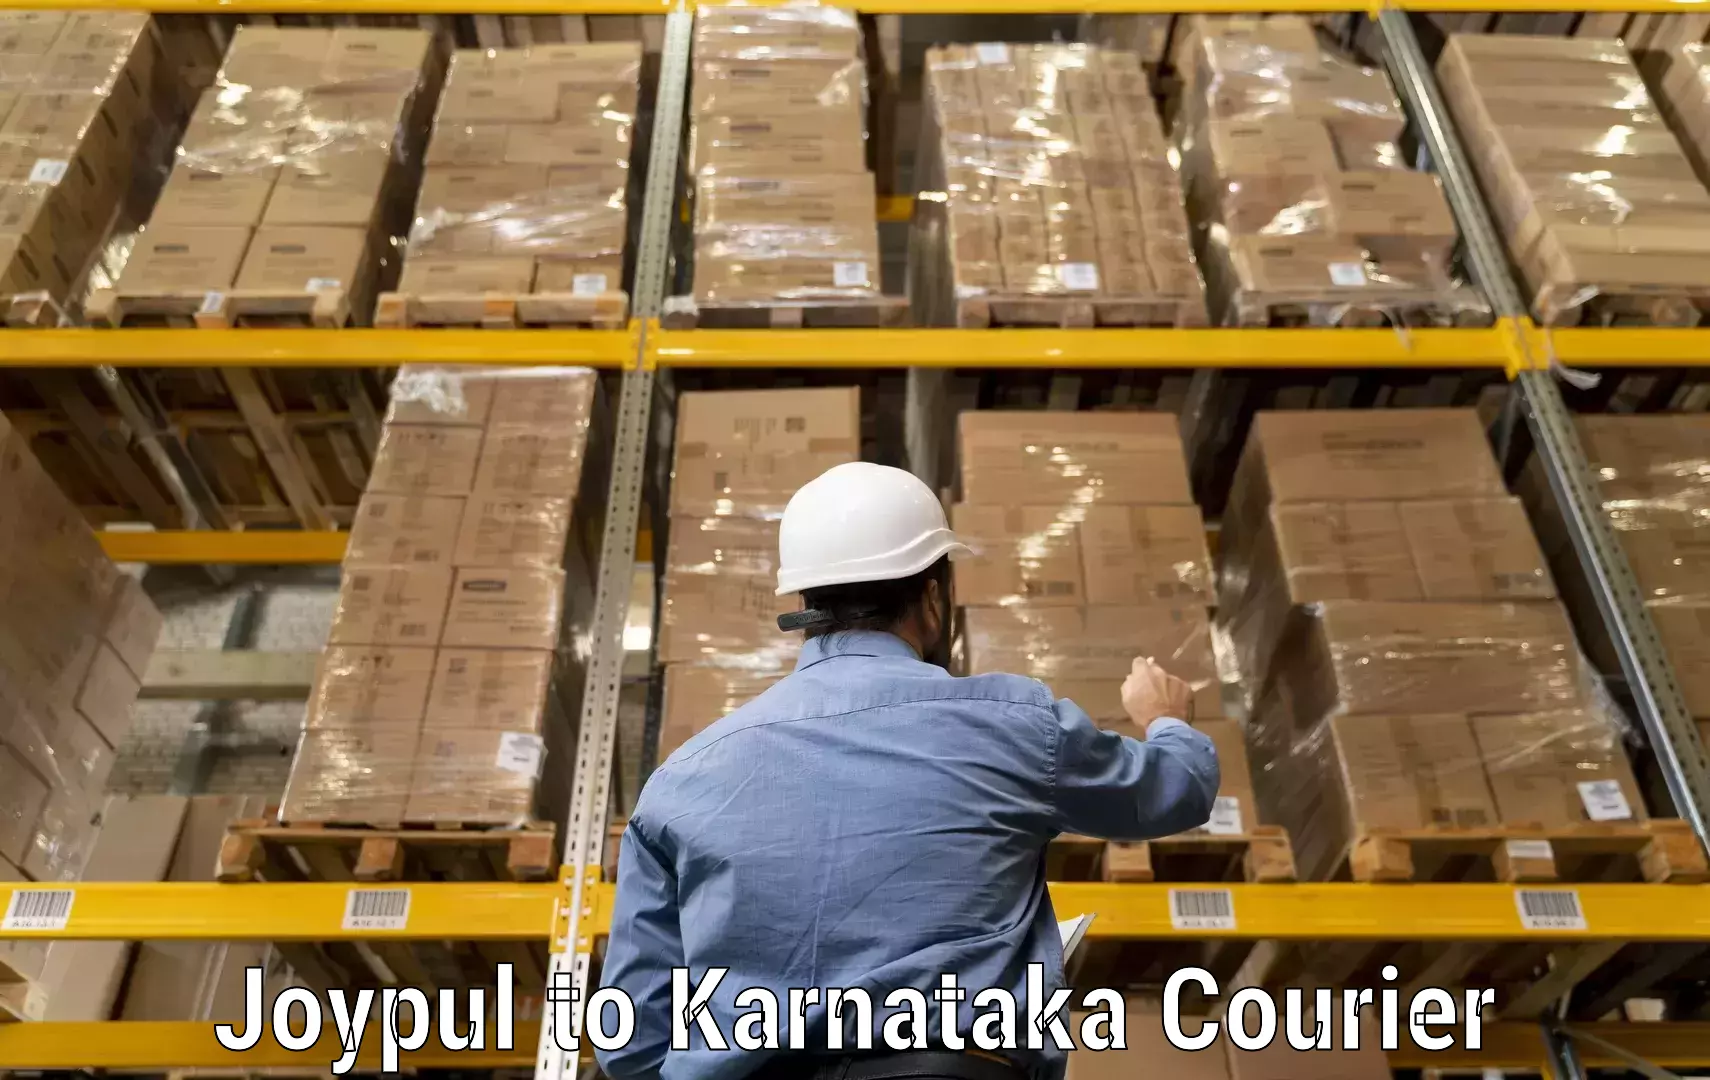 Fast delivery service Joypul to Karnataka